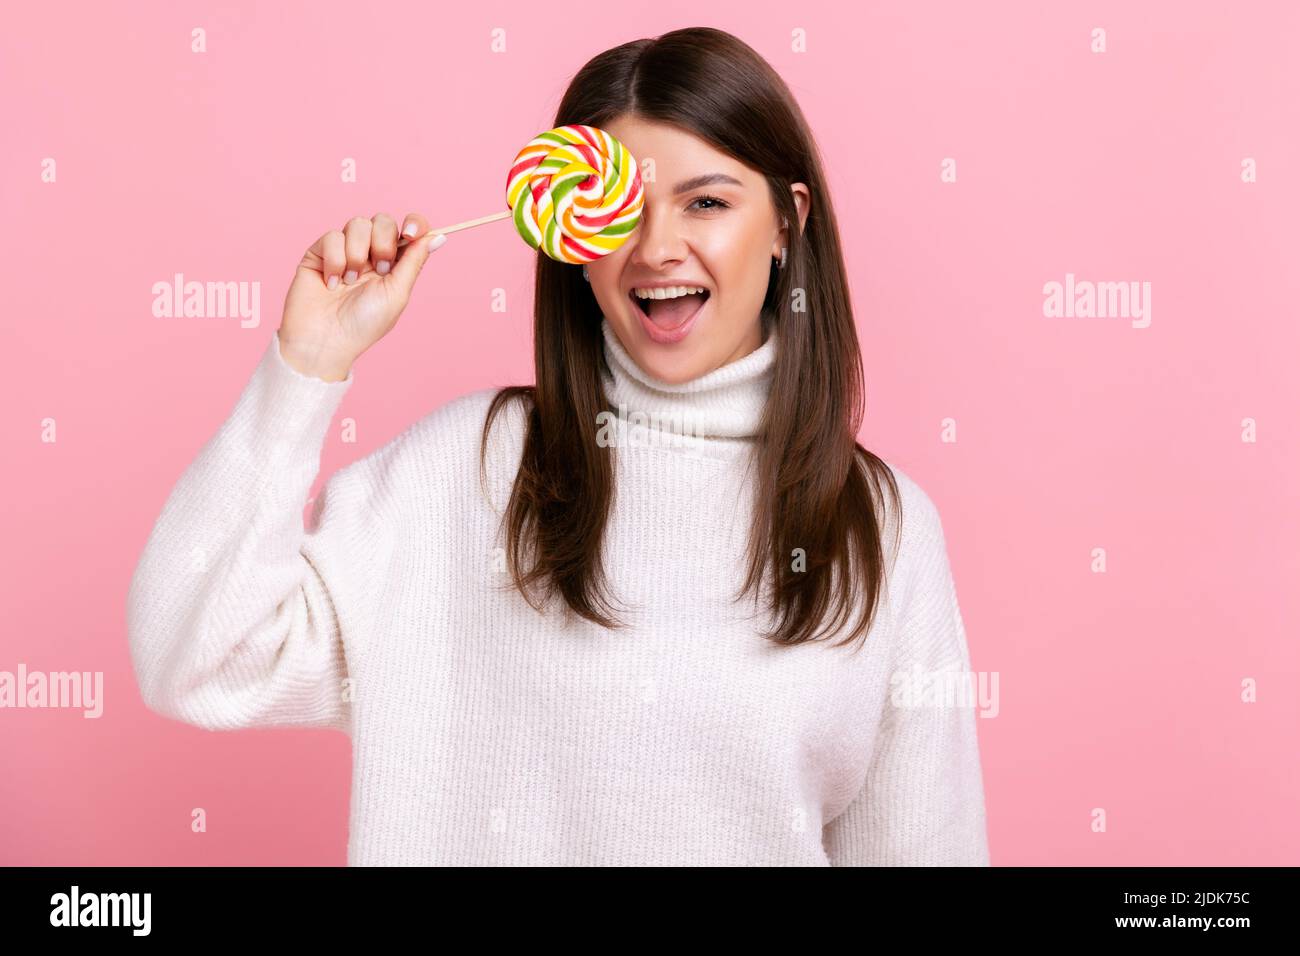 Portrait einer Brünette Frau, die das Auge mit großen leckeren Süßigkeiten bedeckt, die Kamera anschaut, die Zunge herauszeigt und einen weißen Pullover im lässigen Stil trägt. Innenaufnahme des Studios isoliert auf rosa Hintergrund. Stockfoto